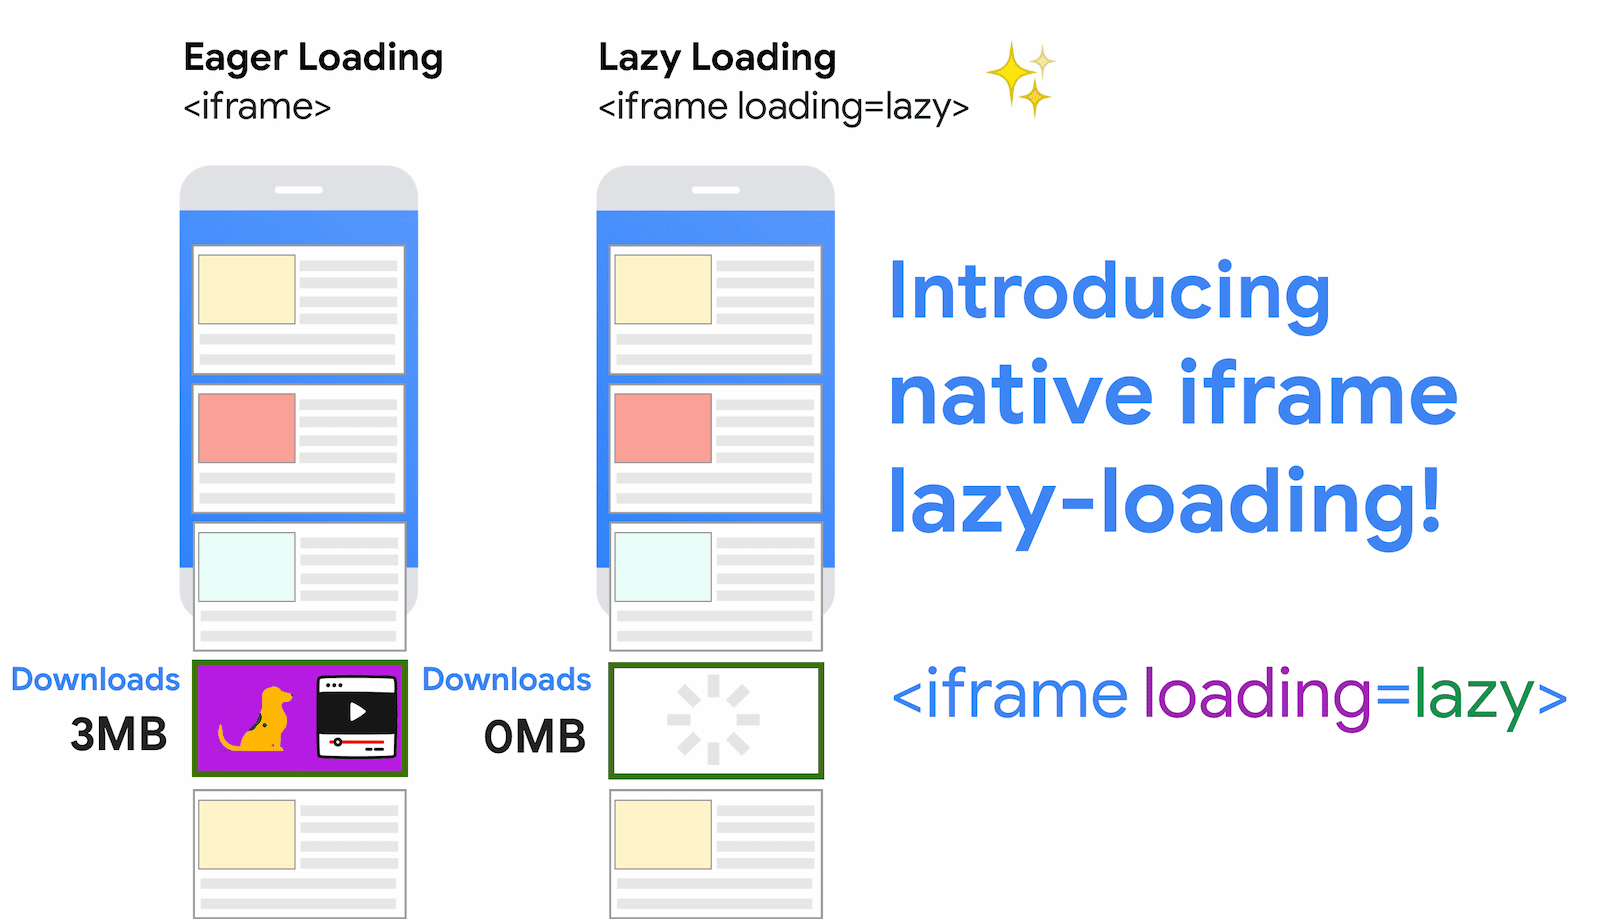 Dateneinsparungen durch die Verwendung von Lazy Loading für iFrames mit iFrames Beim schnellen Laden werden in diesem Beispiel 3 MB abgerufen. Beim Lazy Loading wird dieser Code hingegen erst dann geladen, wenn der Nutzer näher an den iFrame scrollt.